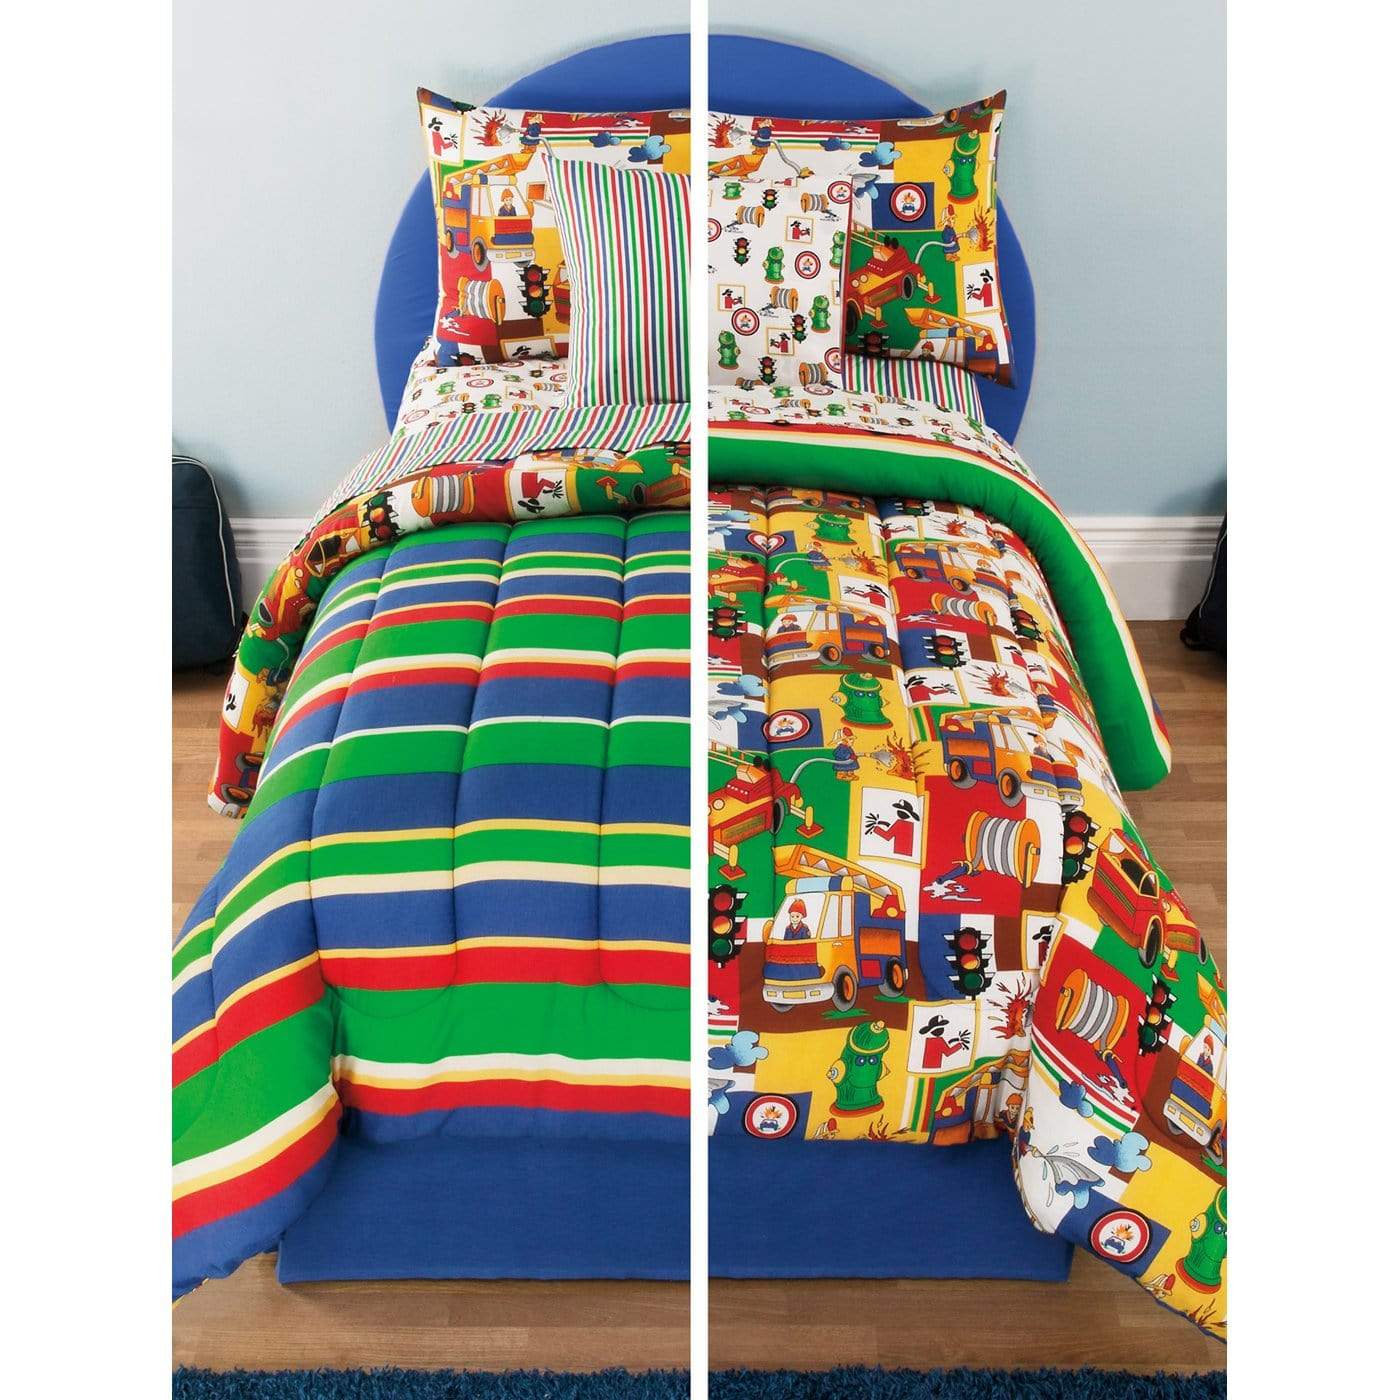 3 Alarm Comforter/Quilt/Duvet Full-Queen Kids Bed in a Bag - 8 Piece